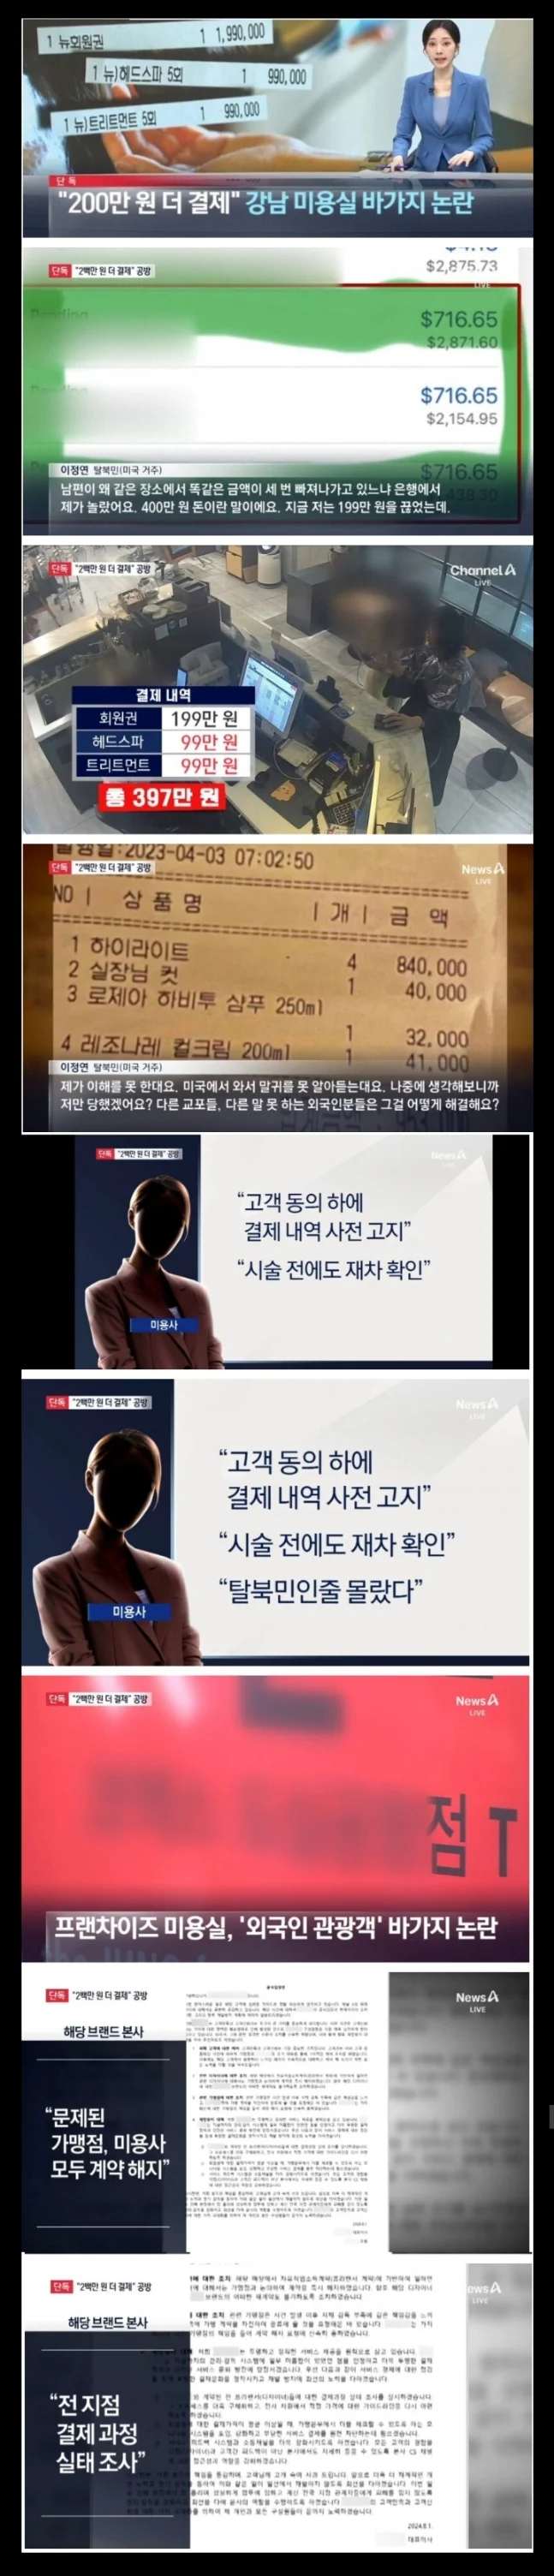 강남 미용실 바가지 논란.webp